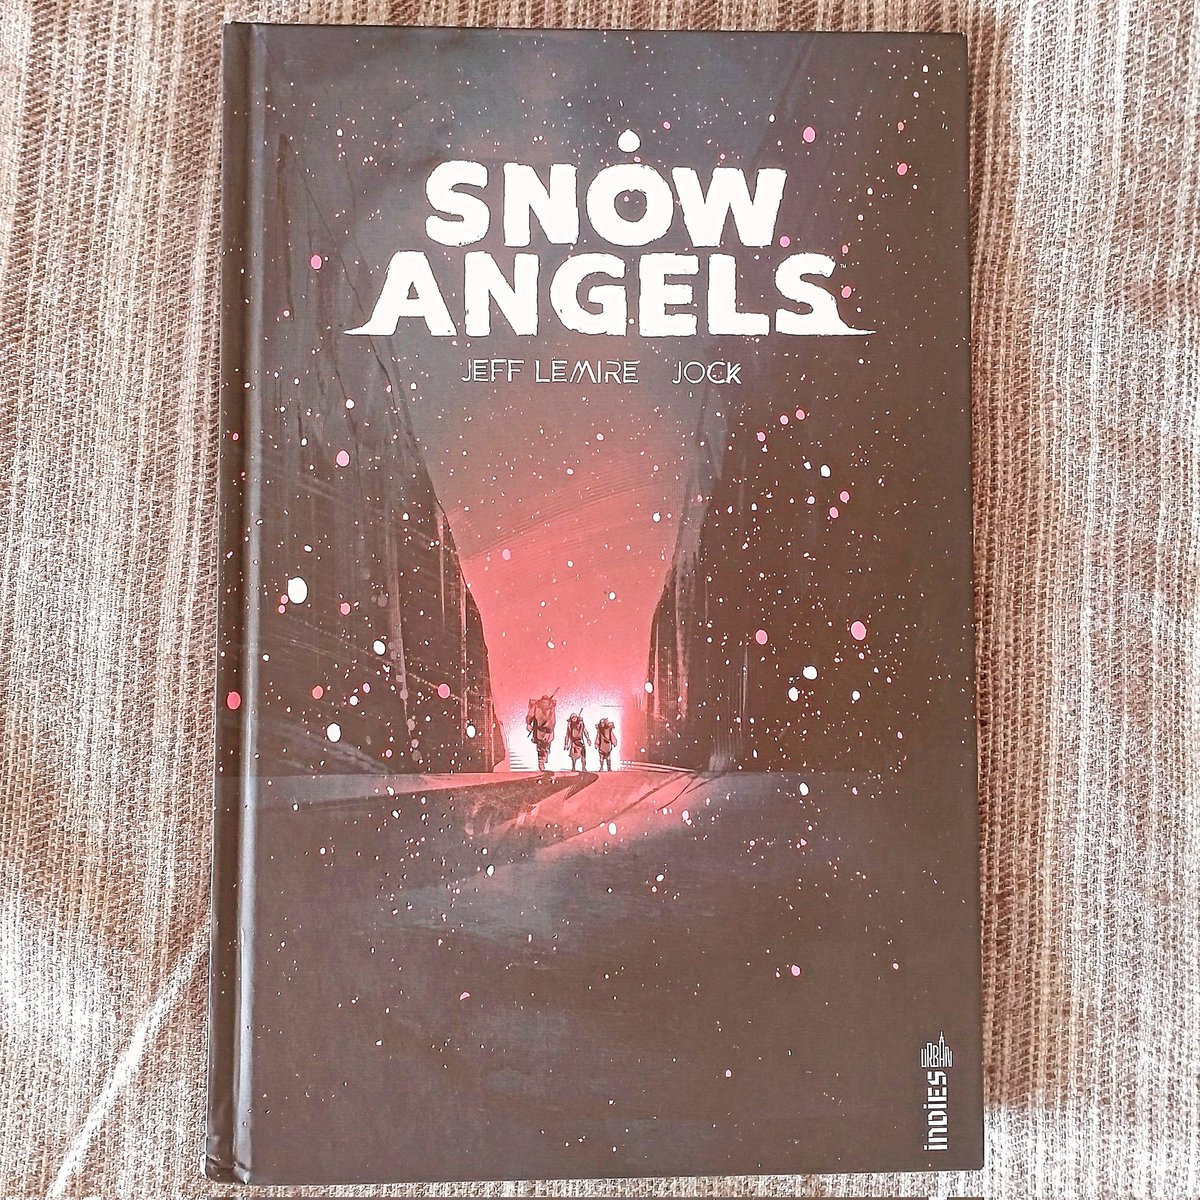 Soyez pas frileux ! On part découvrir Snow Angels en vidéo. Chez @UrbanComics 
De #JeffLemire et #Jock 
youtu.be/o0uPEIsAZ4E?si…

#bd #comics #comicbook #livres #comicbook